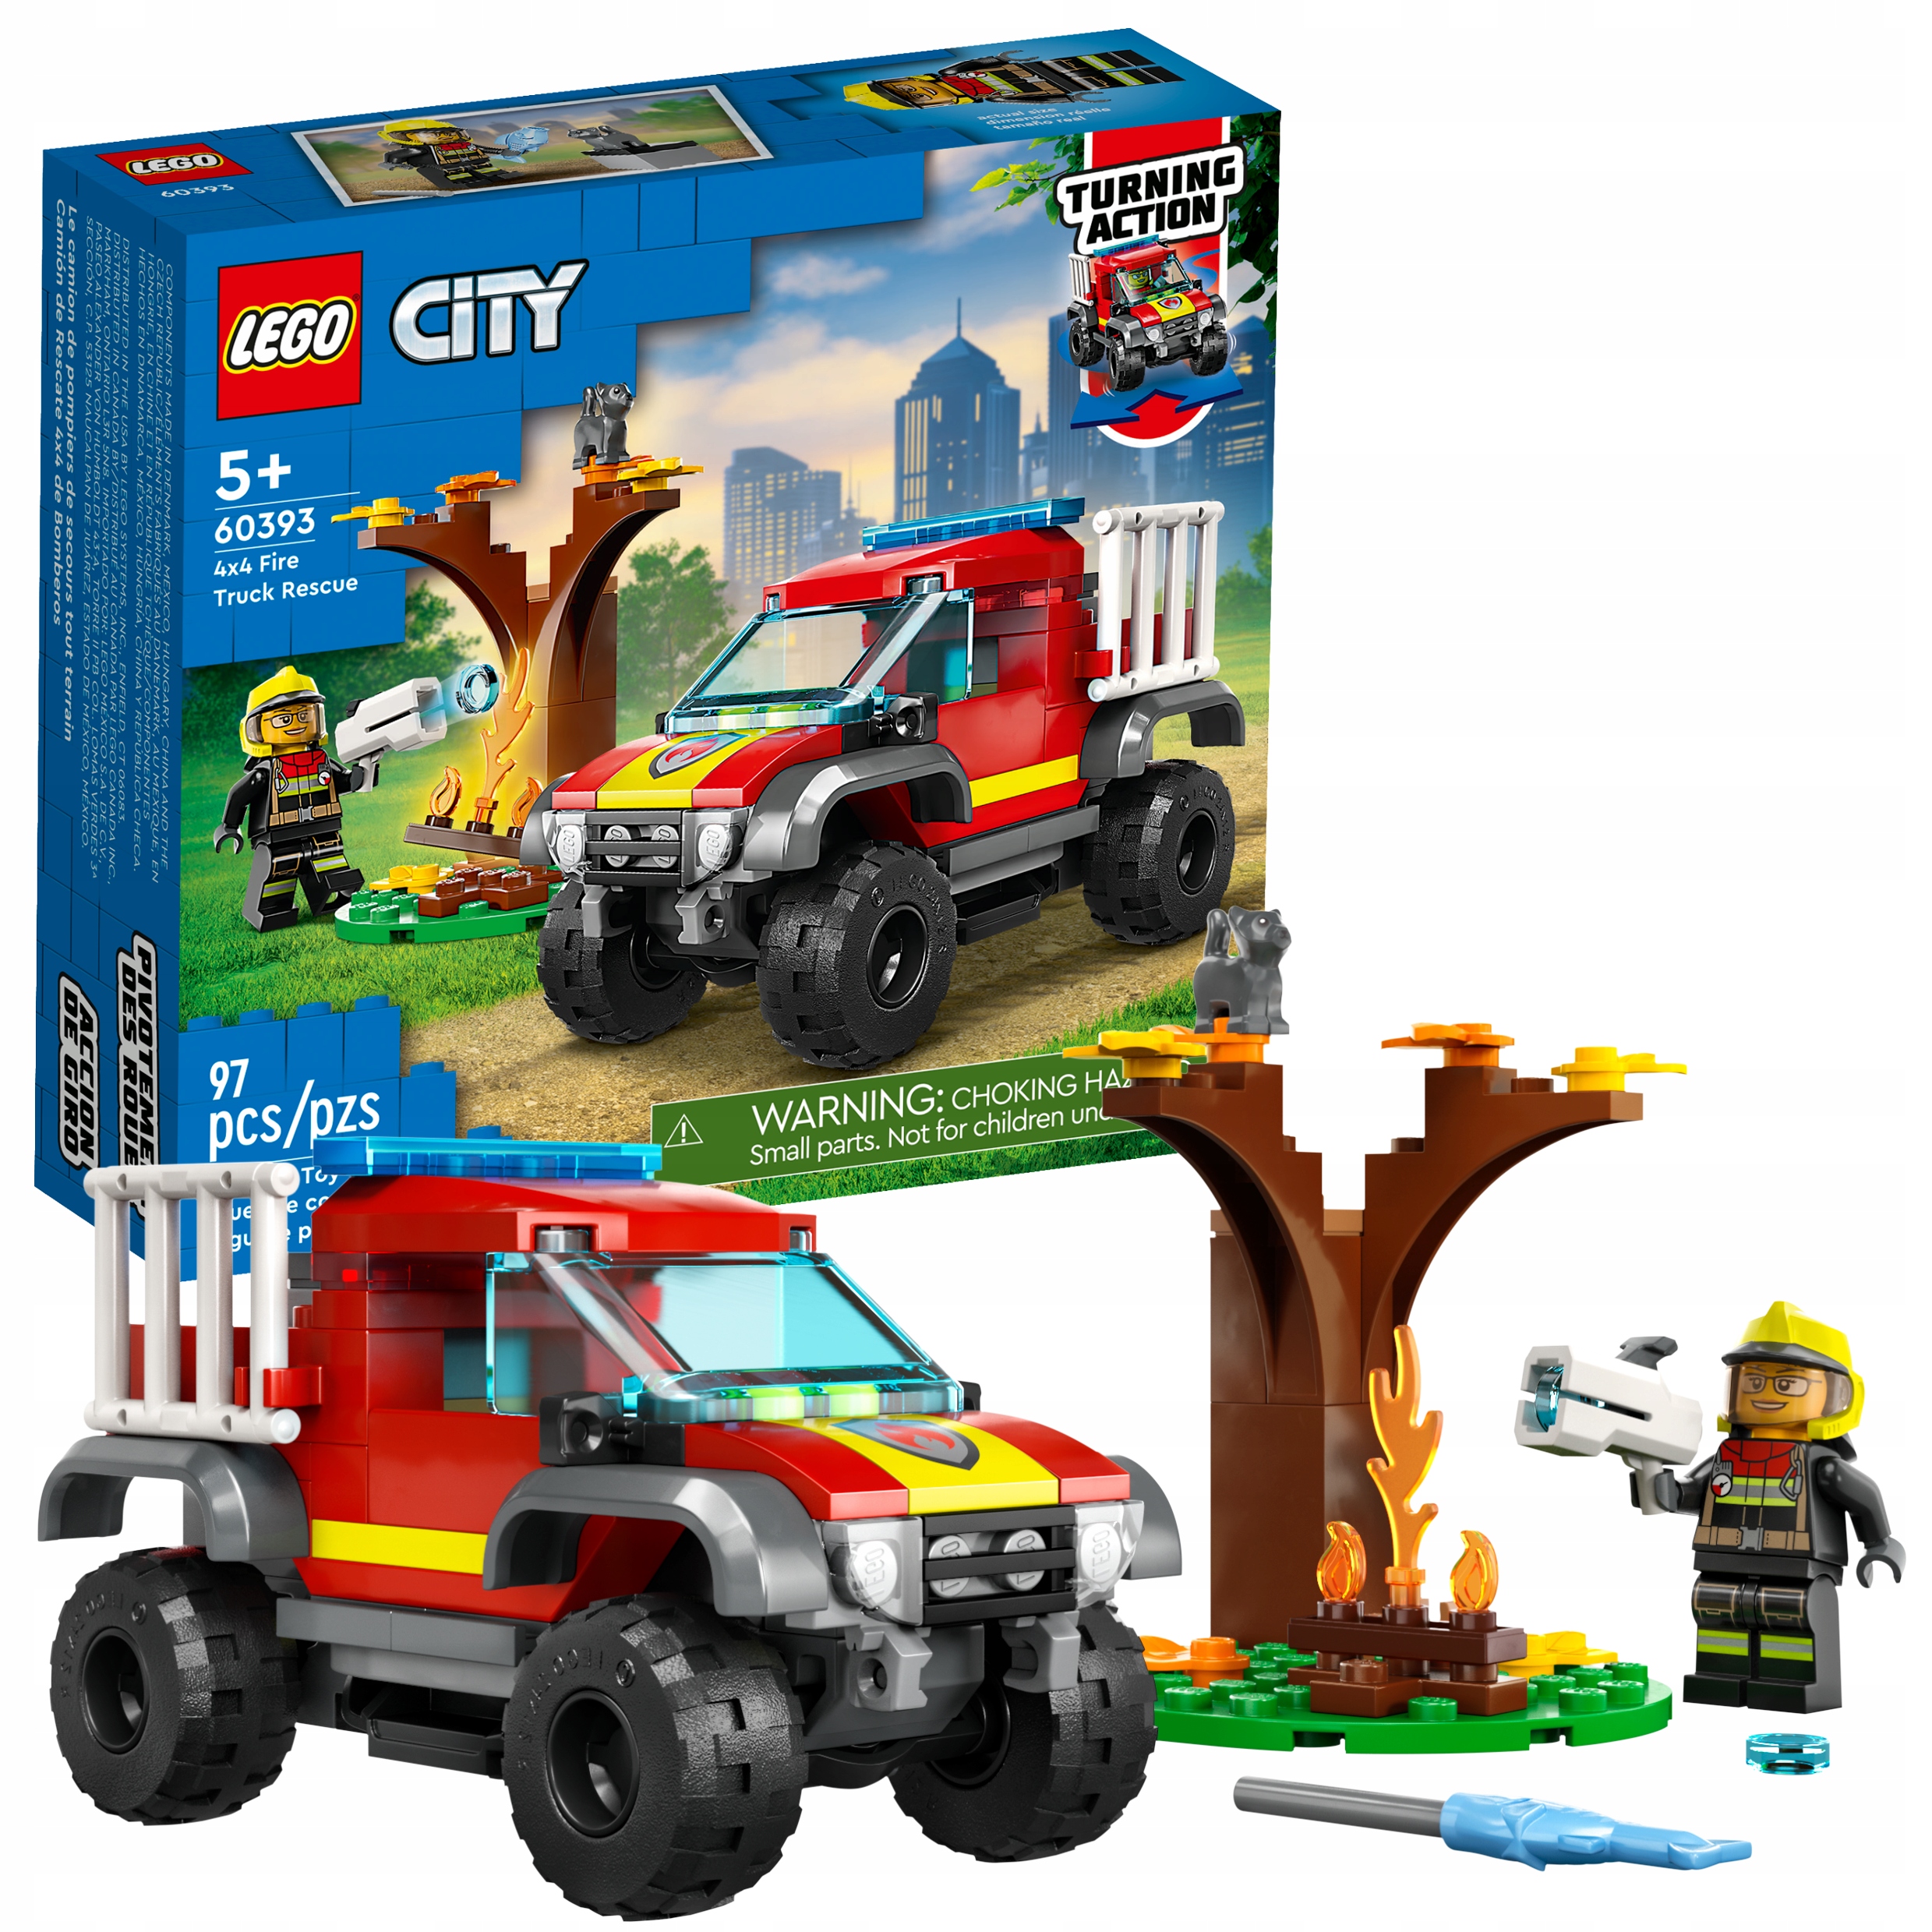 Конструктор LEGO City Спасательный пожарный внедорожник, 97 деталей, 60393 конструктор вайс блок спасательный катер 8 в 1 65 деталей 40428